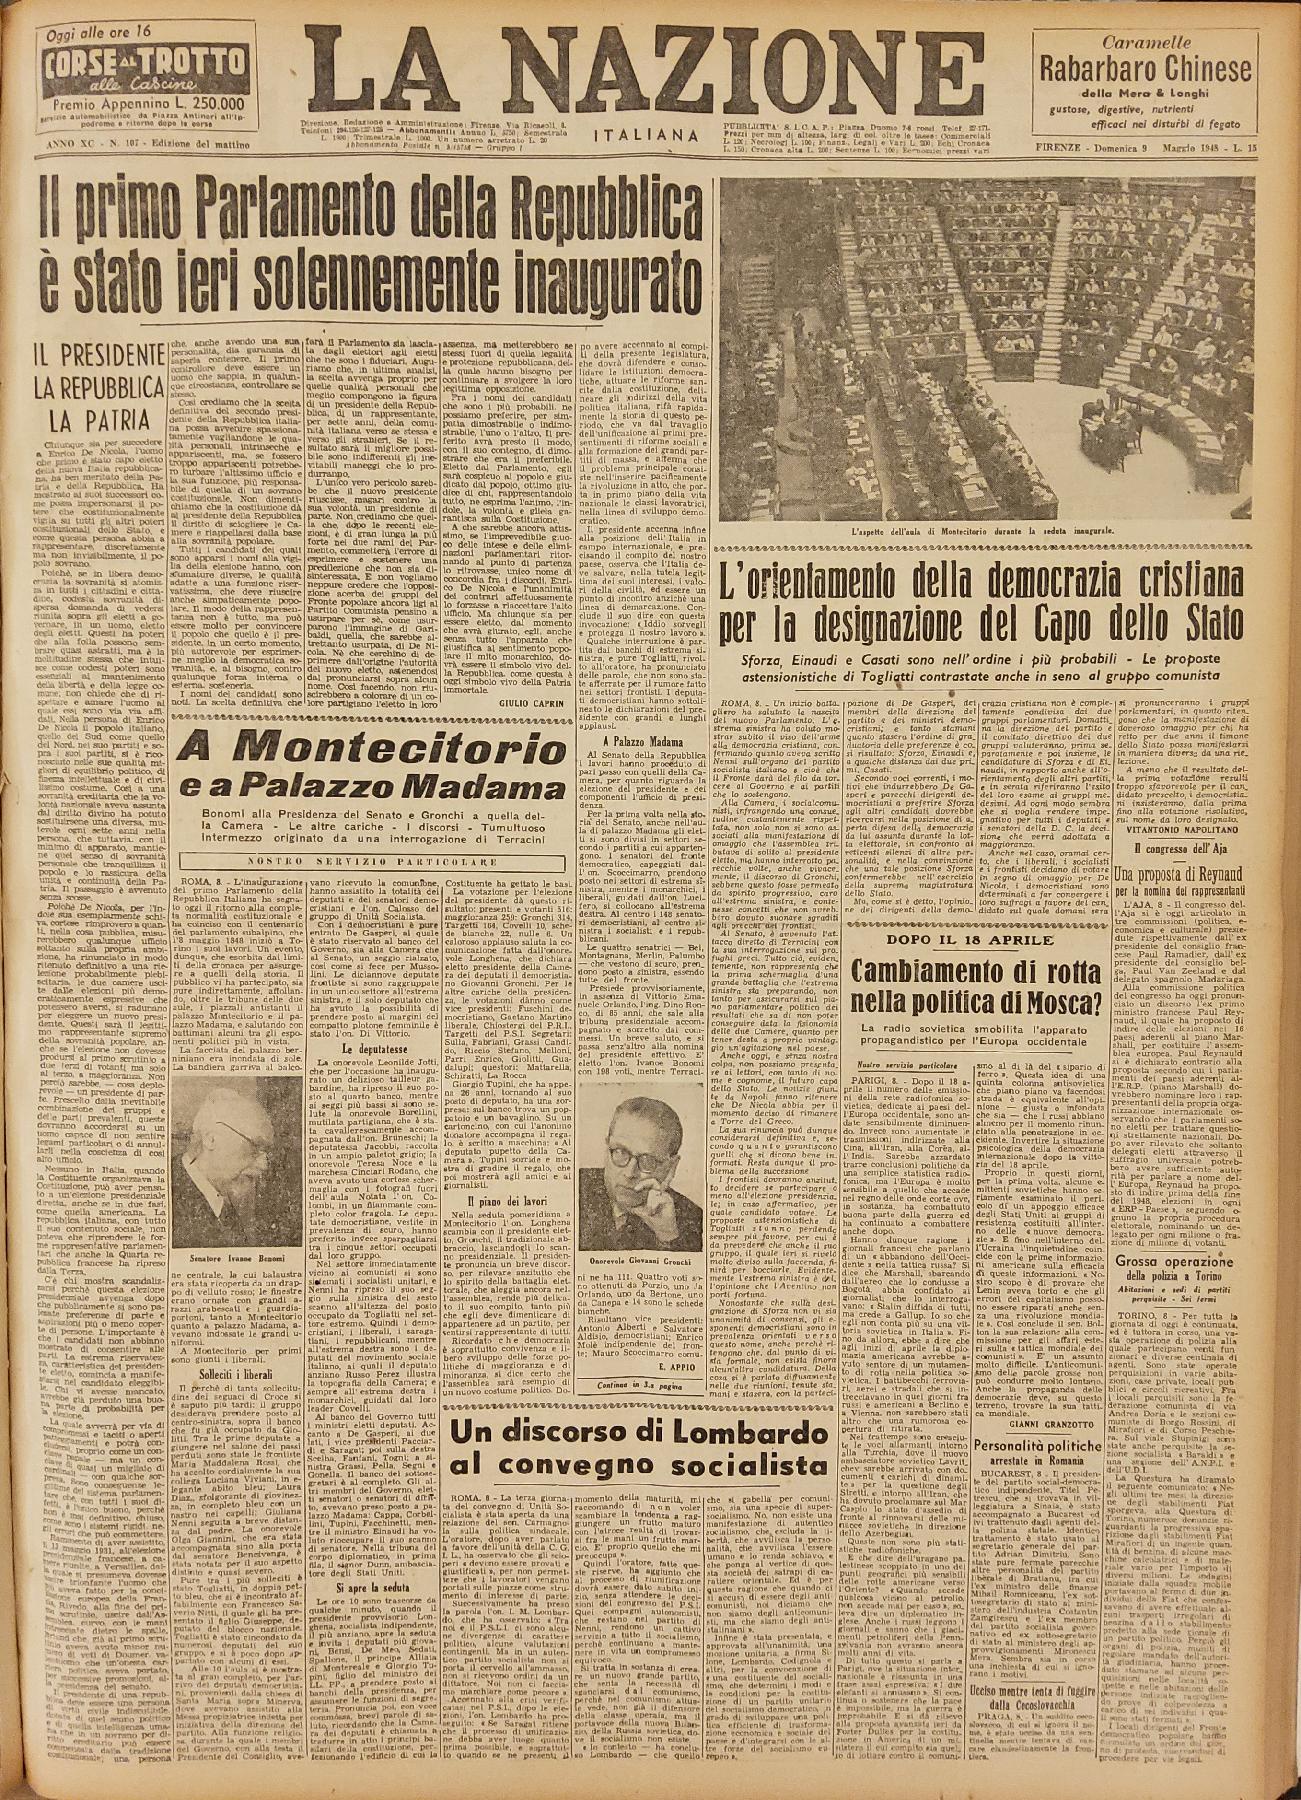 9 maggio 1948 - Prima pagina del quotidiano "La Nazione".